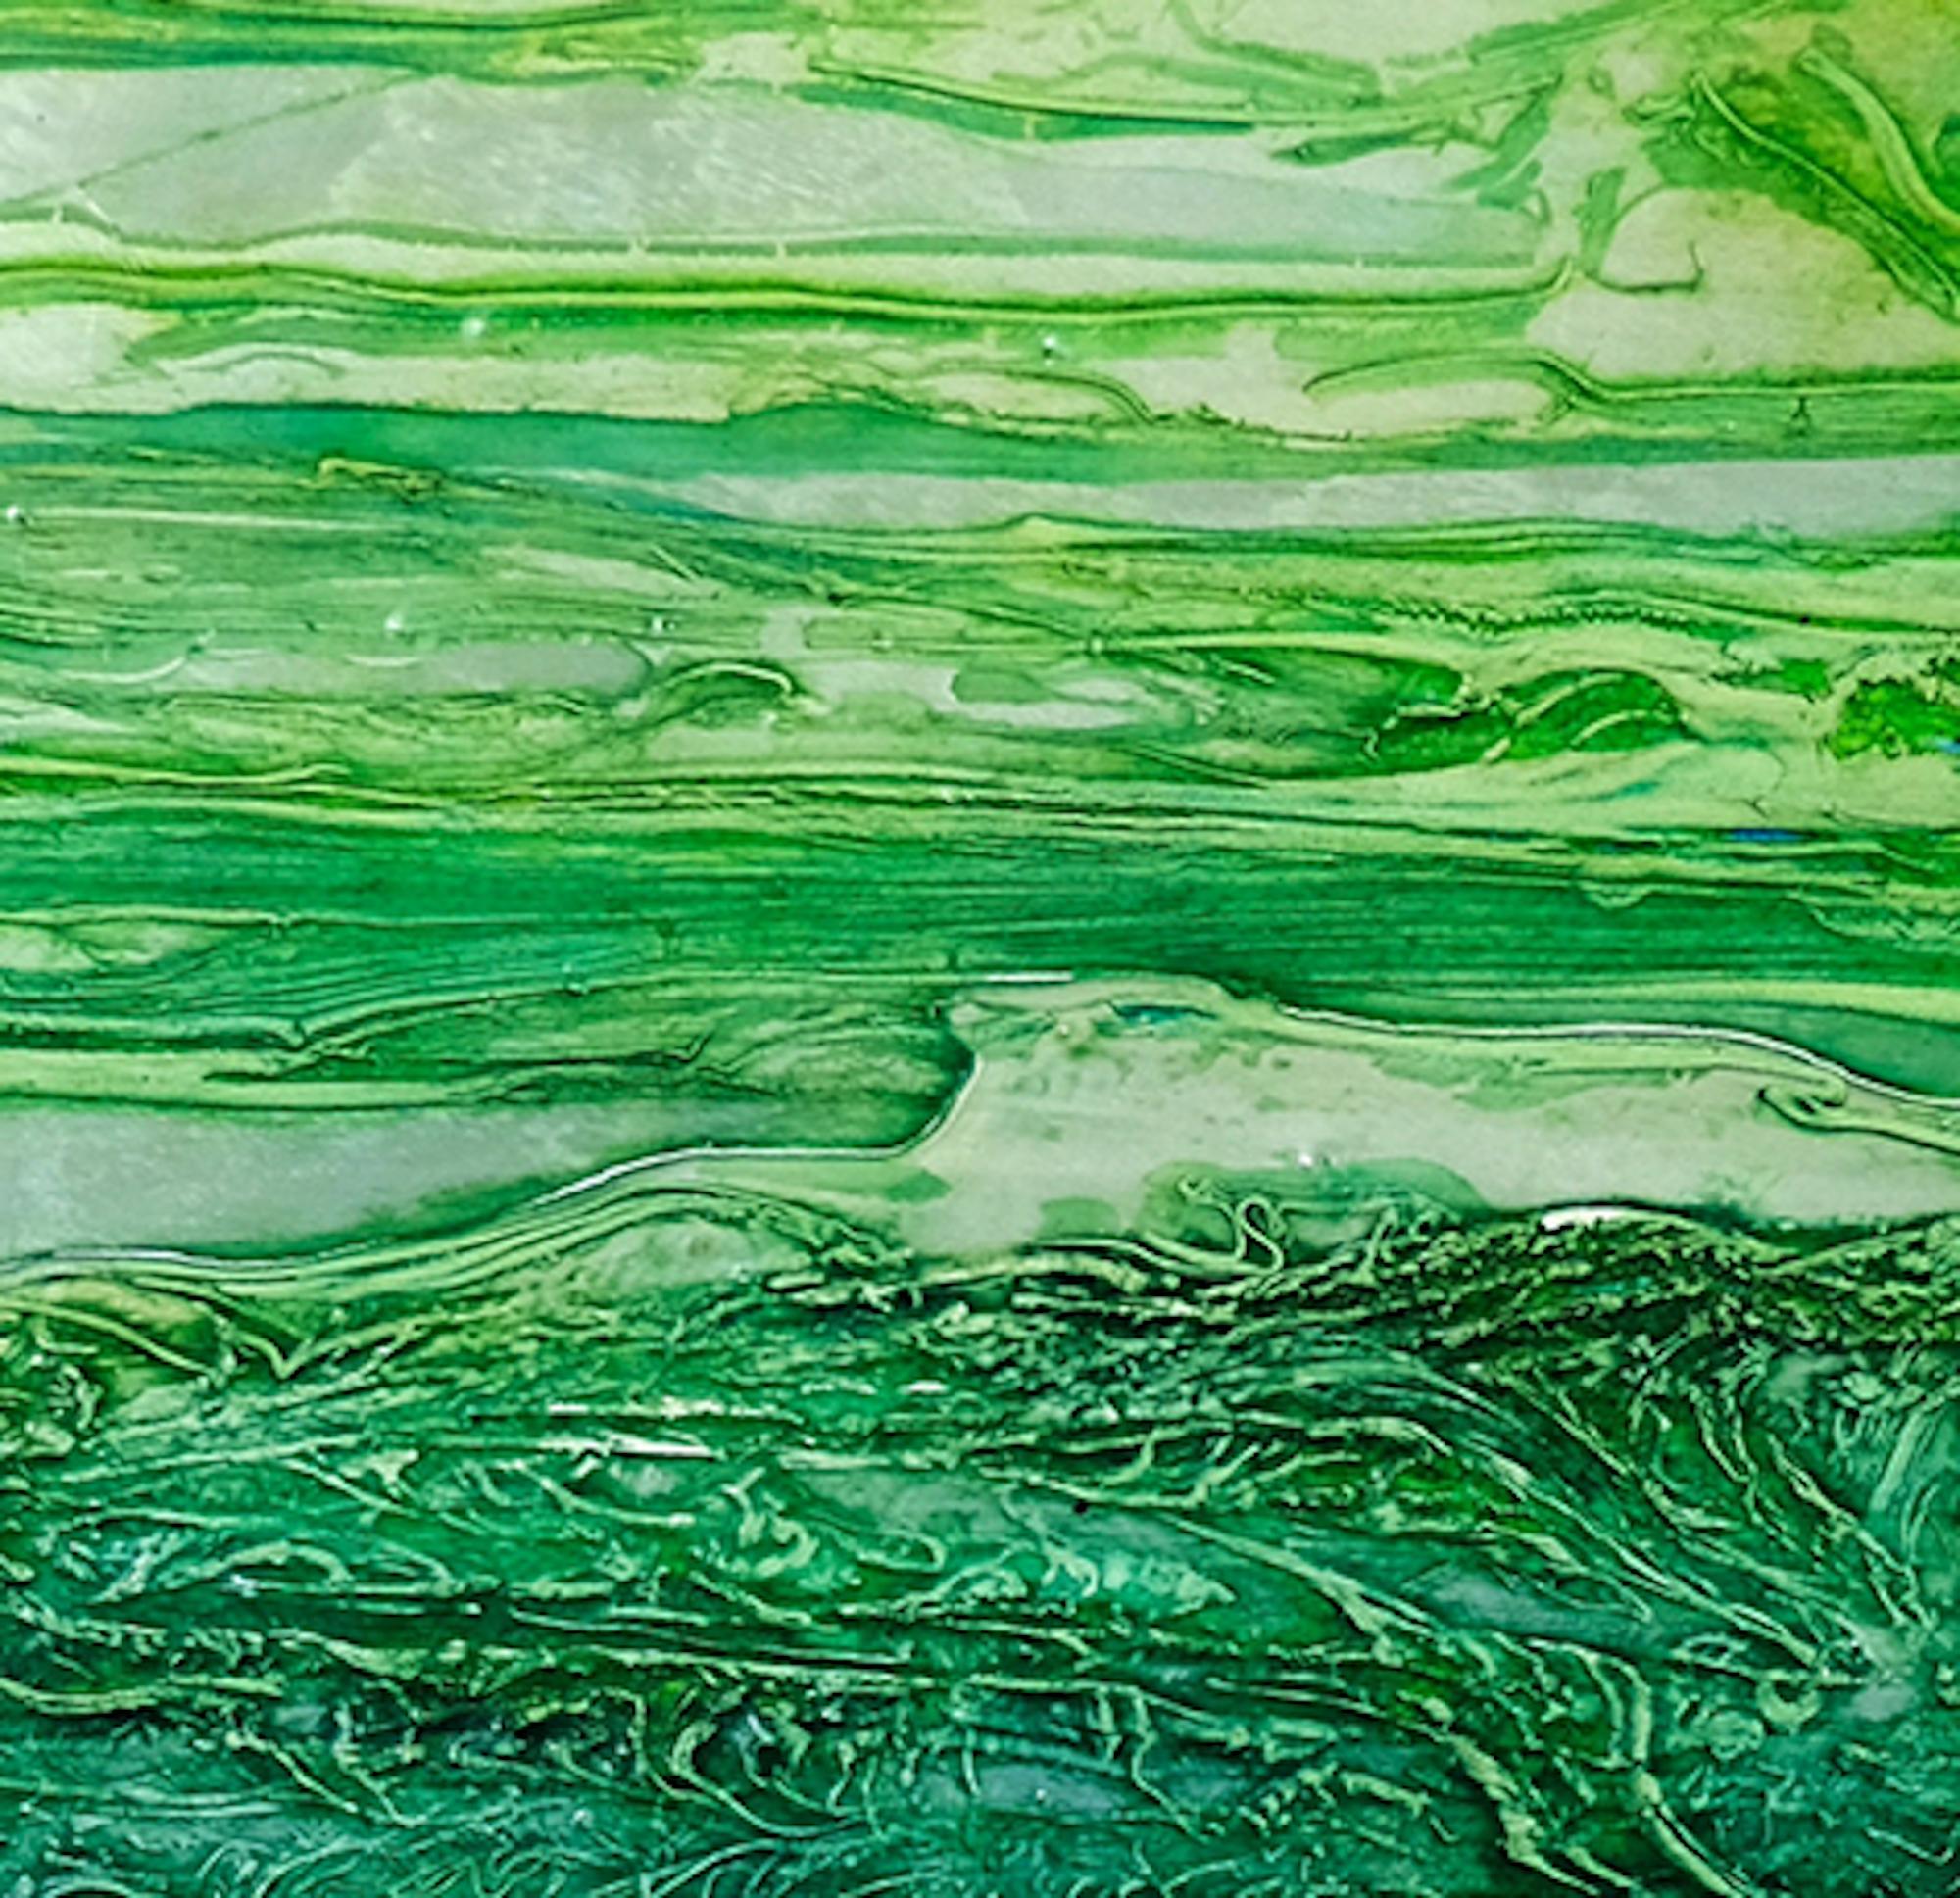 VF15, nature art, green art, affordable art, snail's view art, original art - Green Landscape Painting by Jonathan Moss